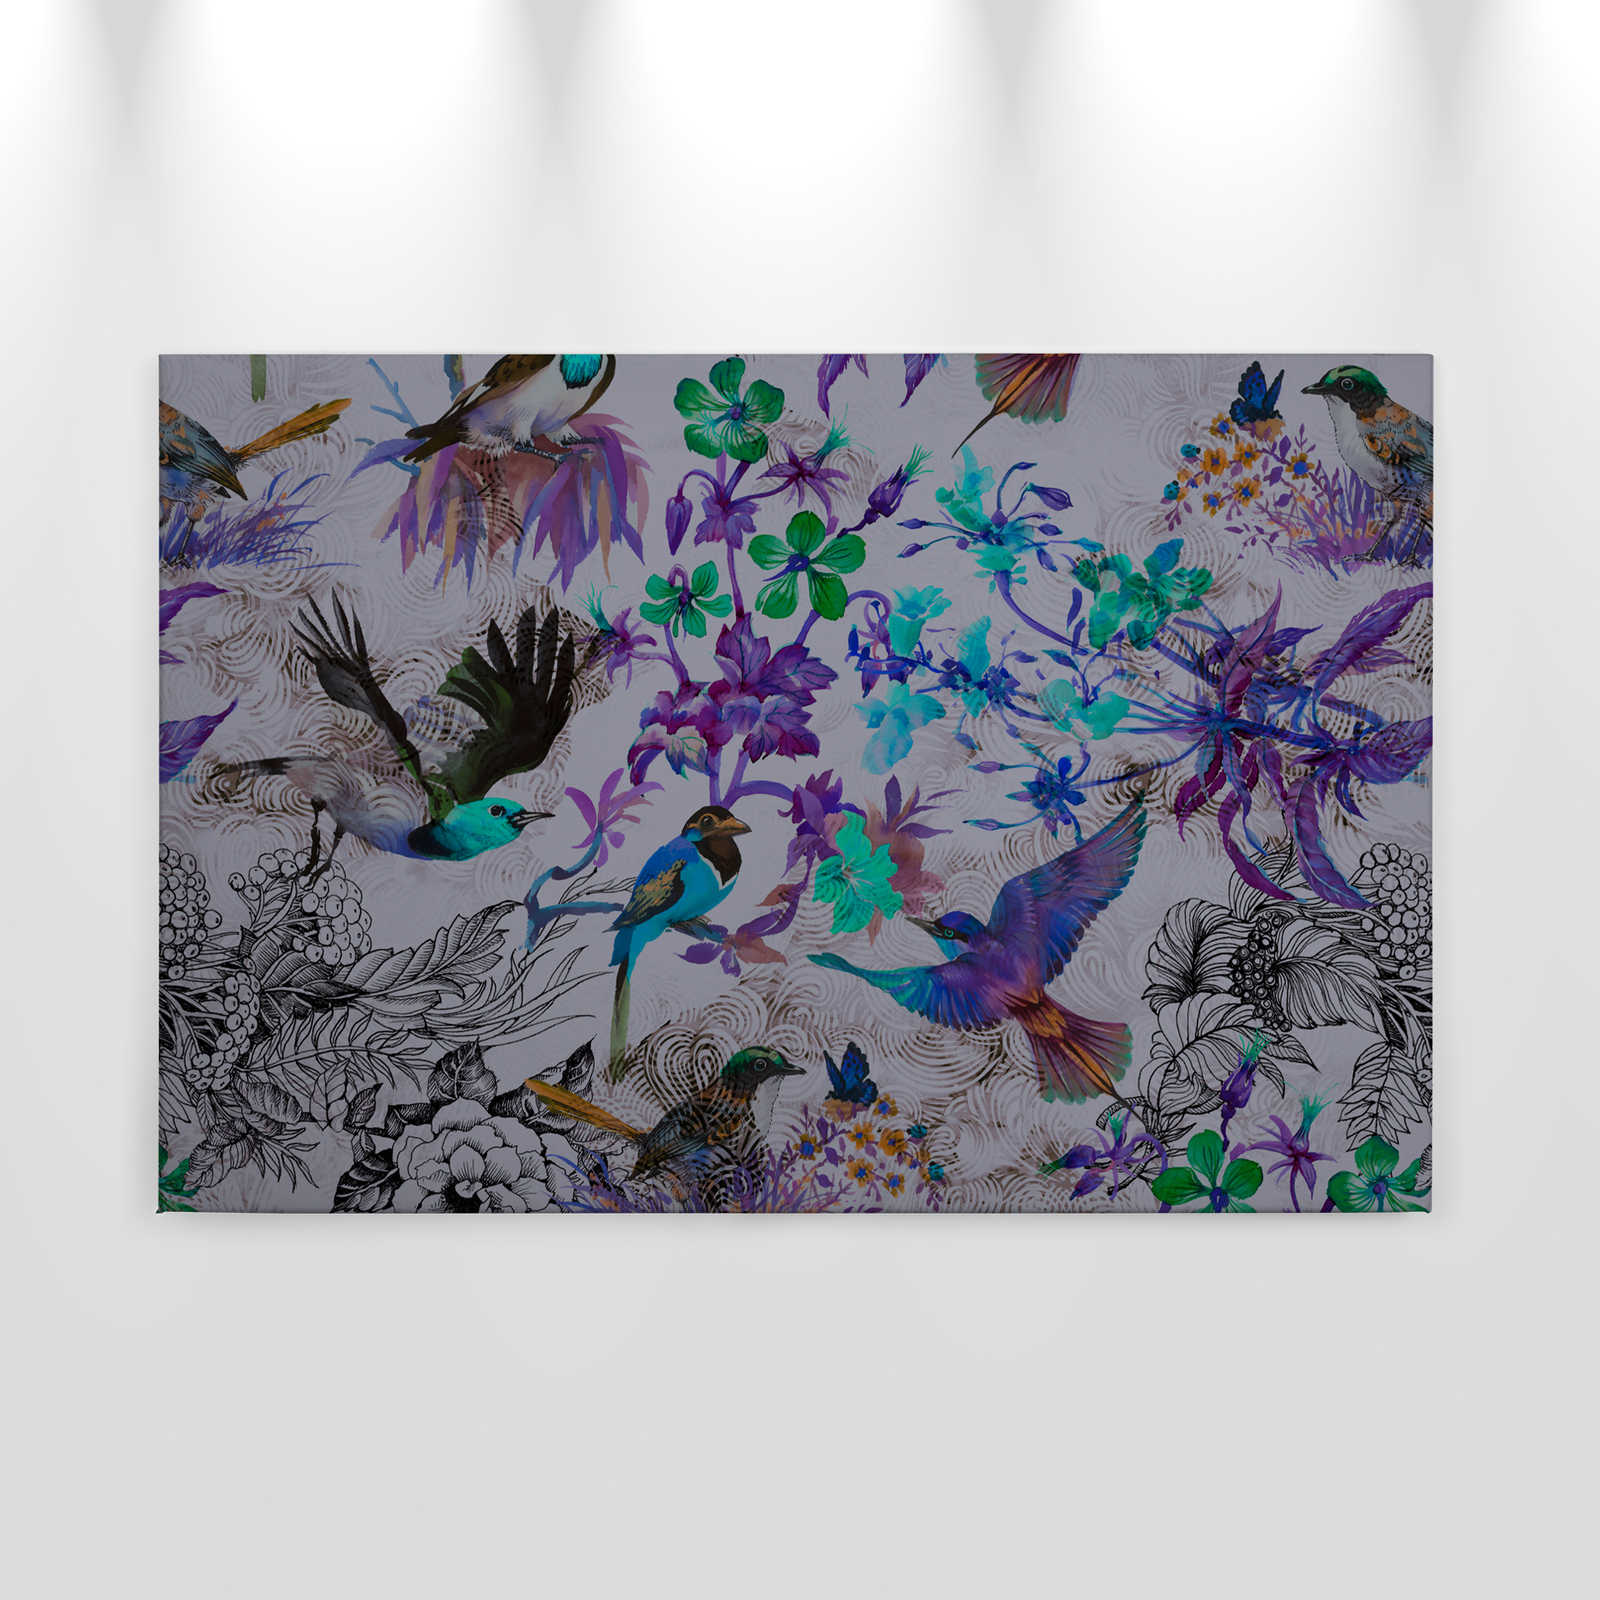             Cuadro en lienzo morado con flores y pájaros - 0,90 m x 0,60 m
        